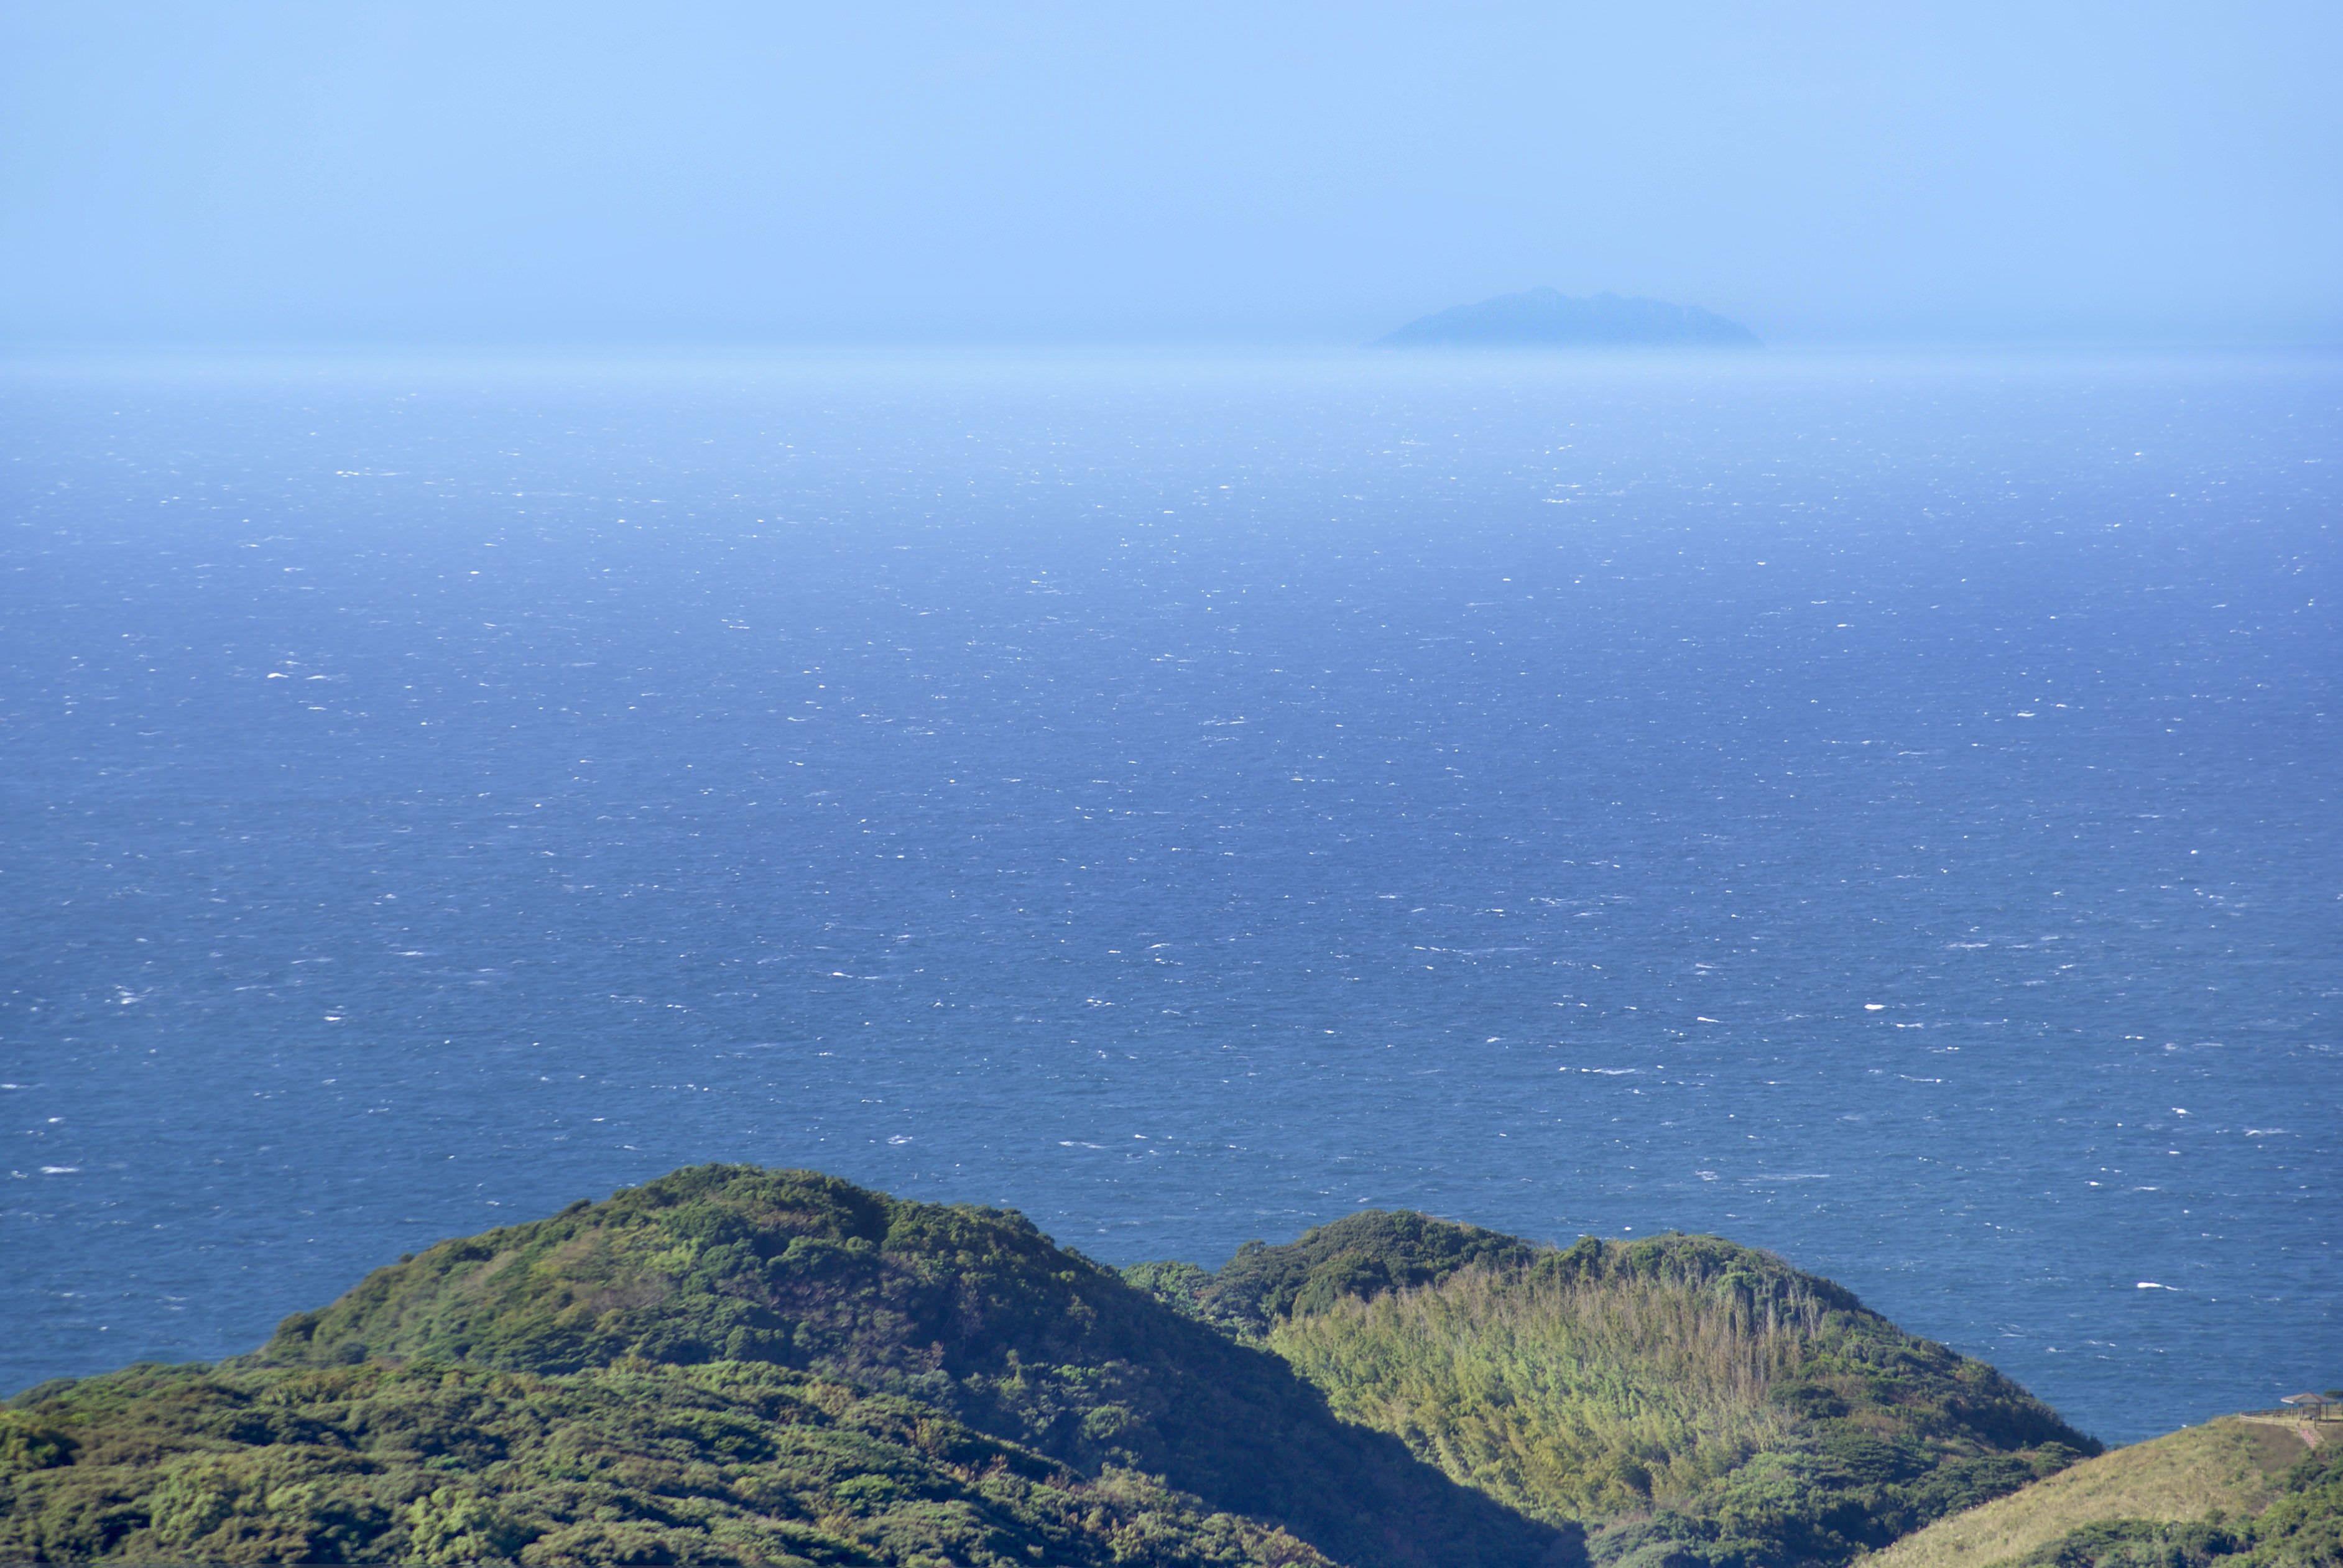 宗像市大島の御嶽山（みたけさん）山頂にある展望所から撮影された写真